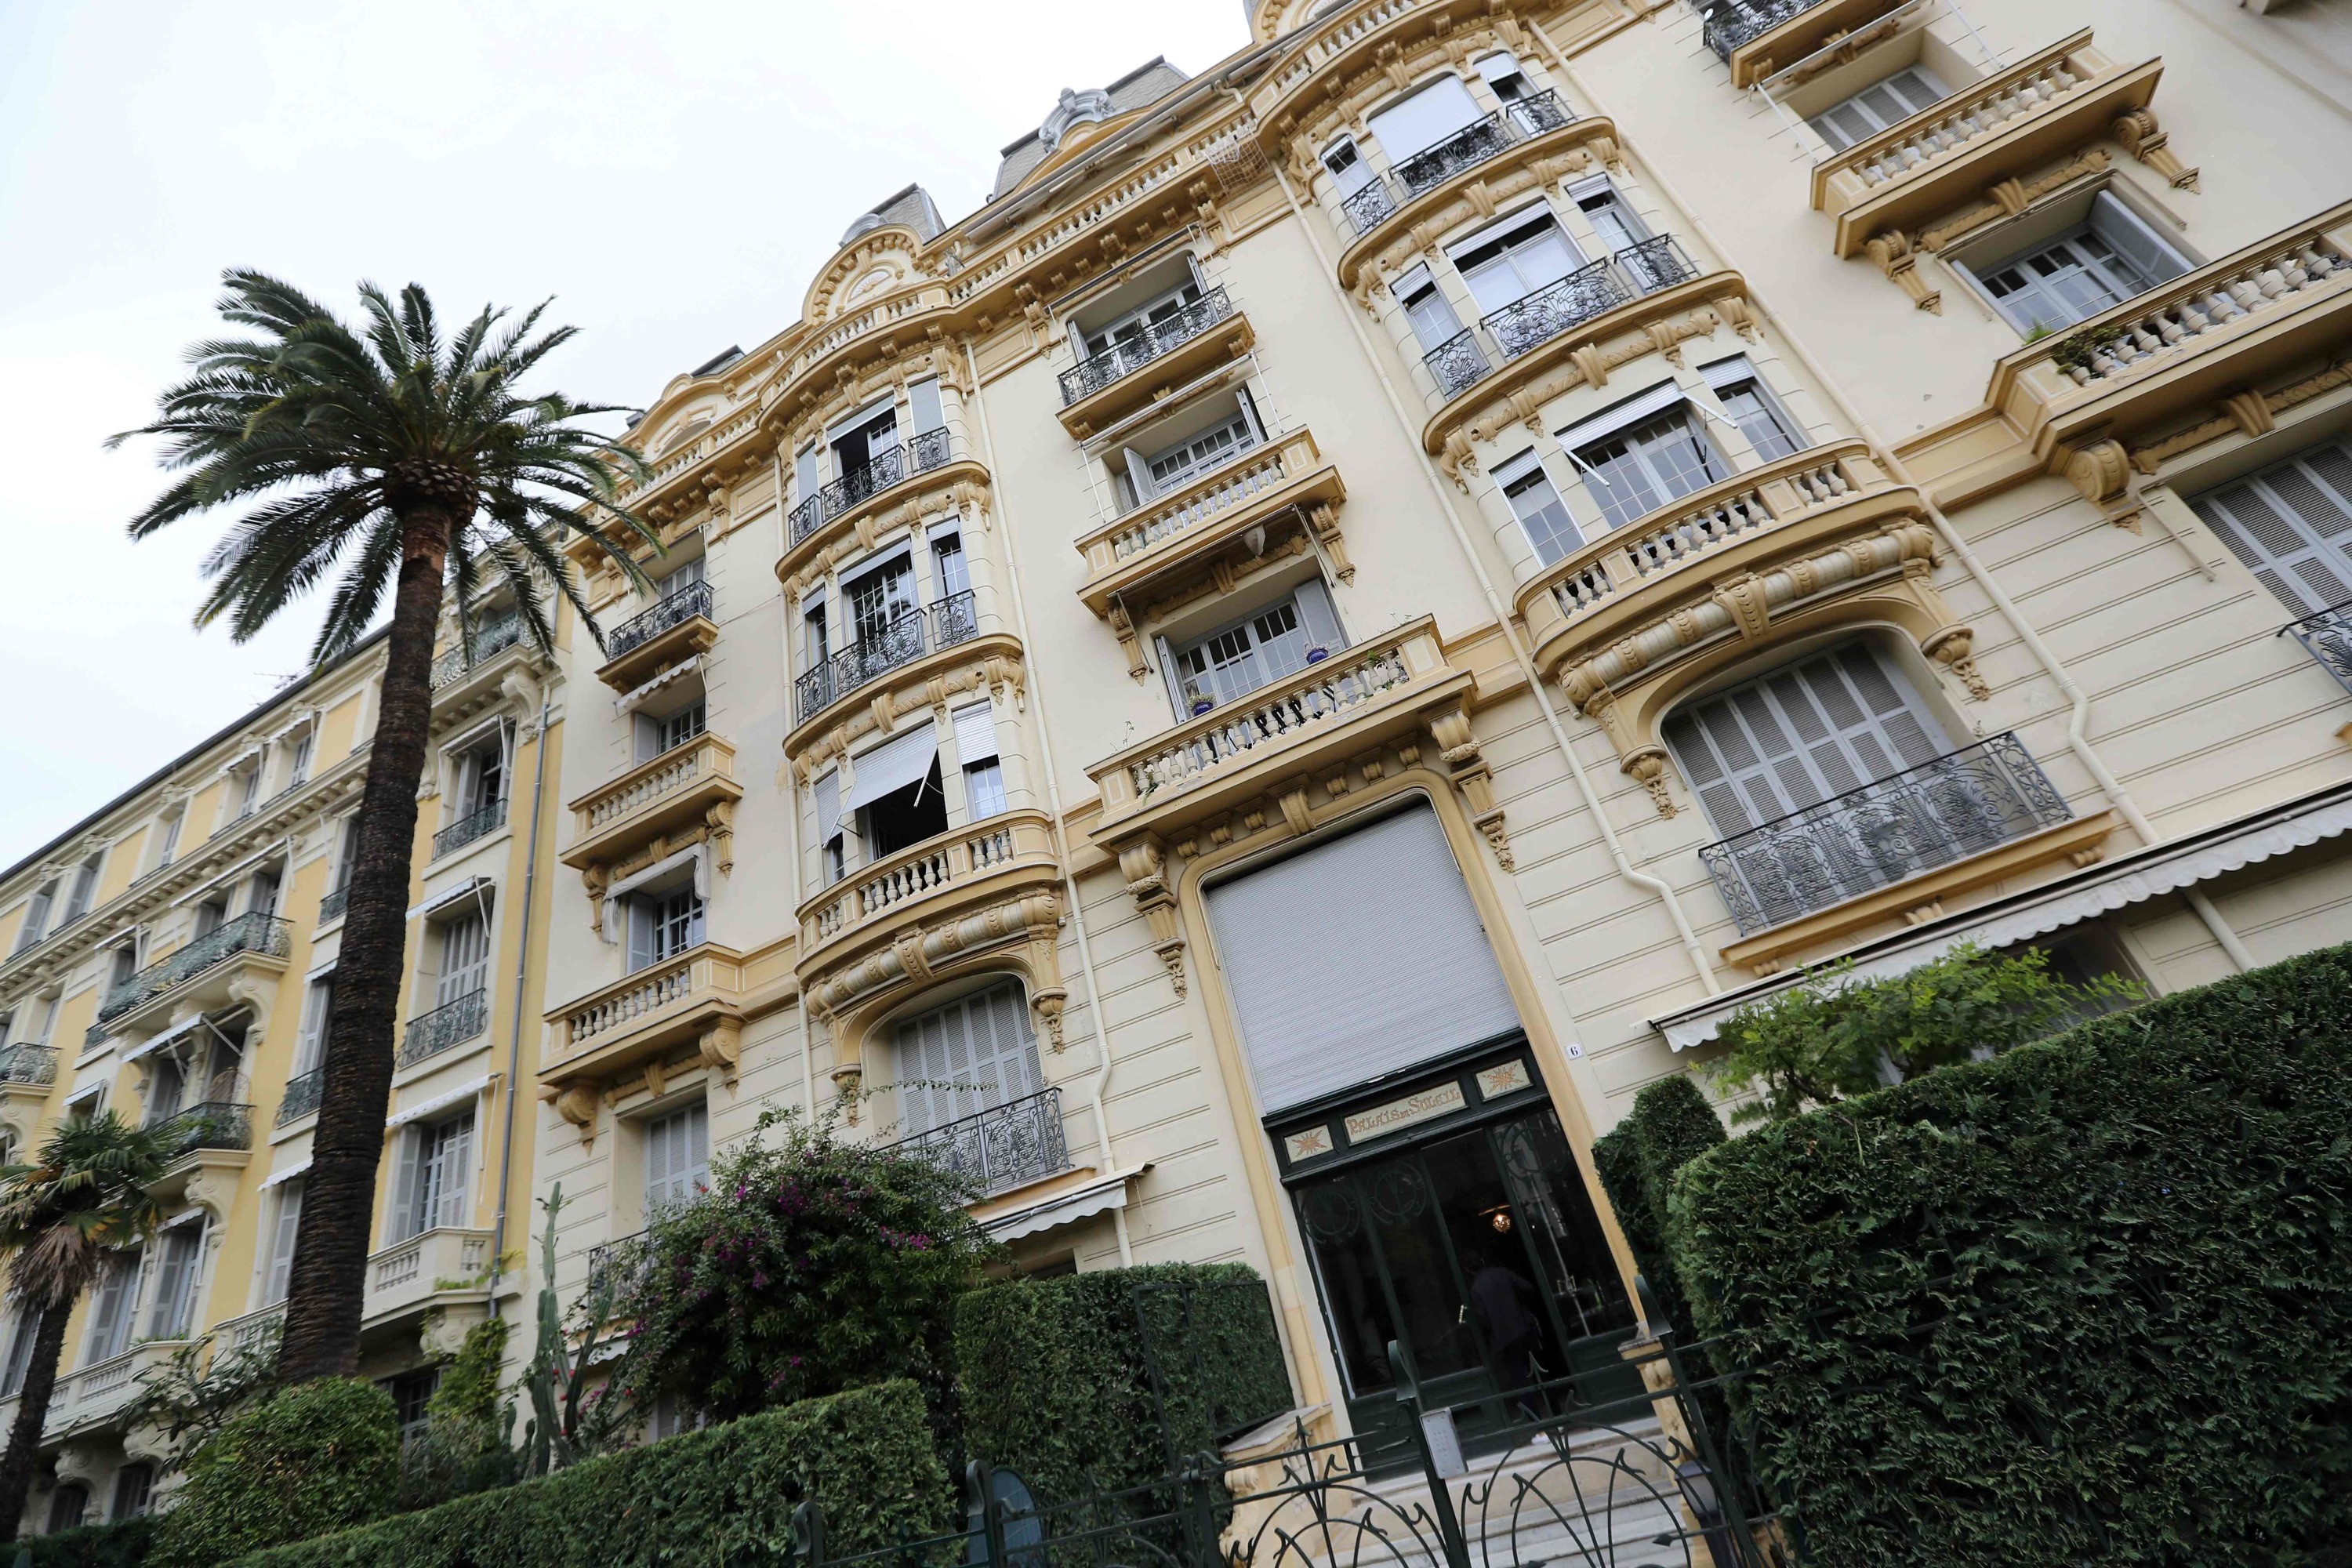 Affaire Veyrac : le restaurateur italien condamné pour le rapt de la riche hôtelière niçoise fait appel